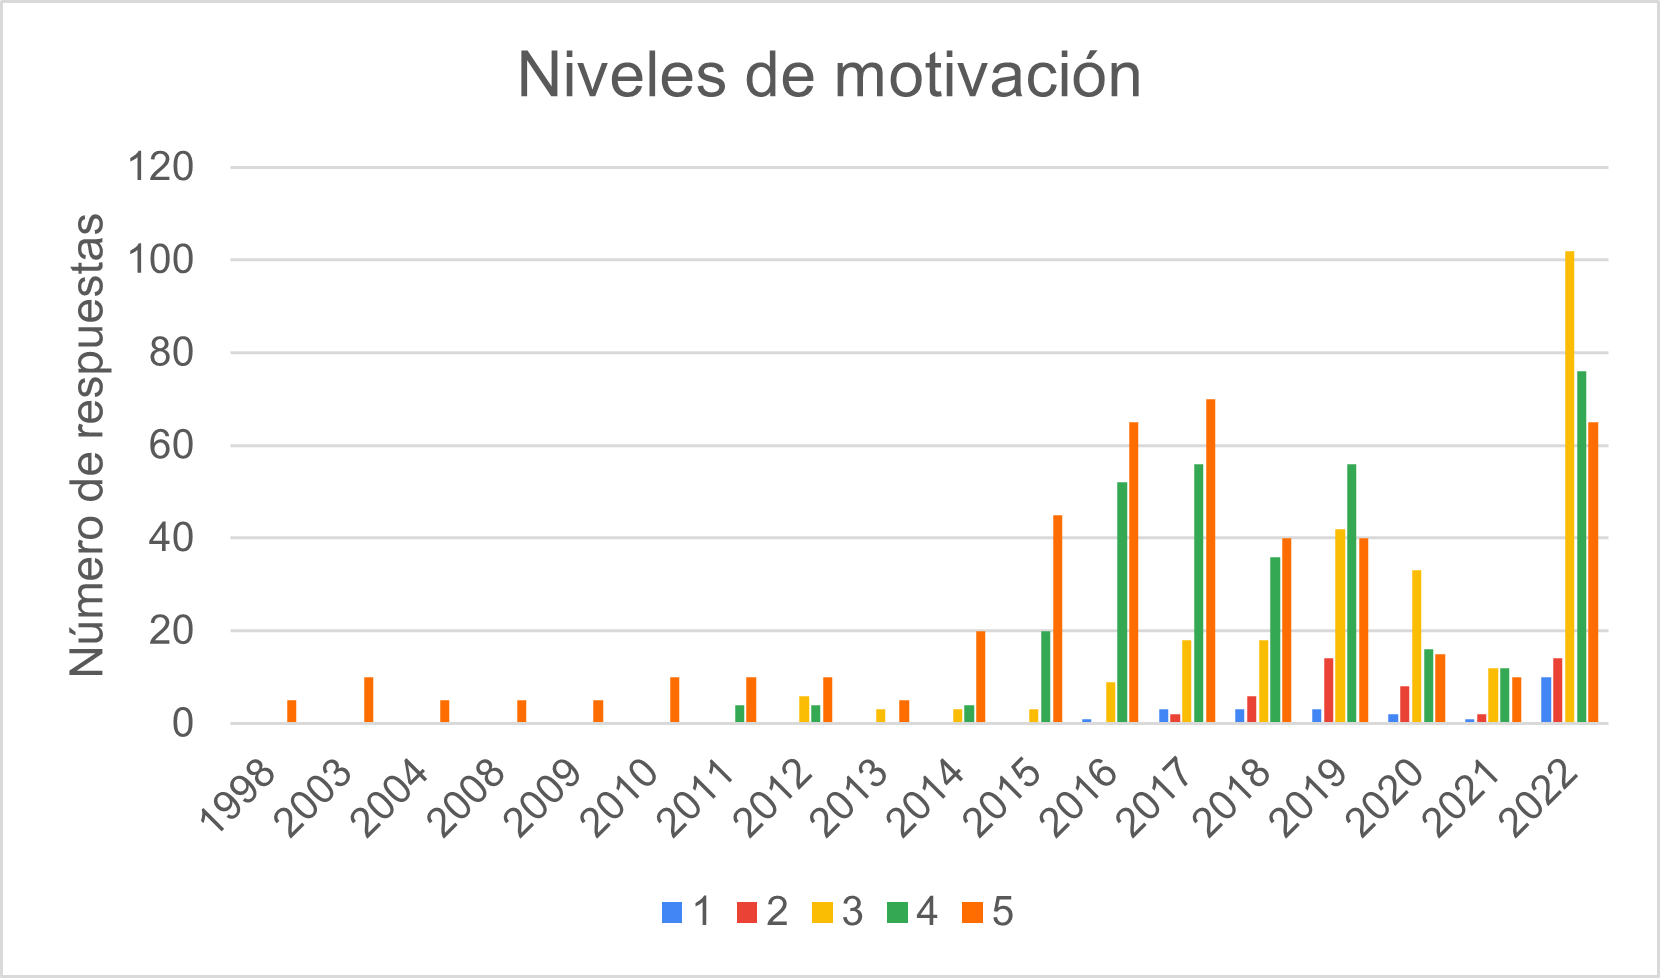 Niveles de motivación distribuidos por el primer año de universidad (1 poco motivado, 5 muy motivado). Fuente: Elaboración propia